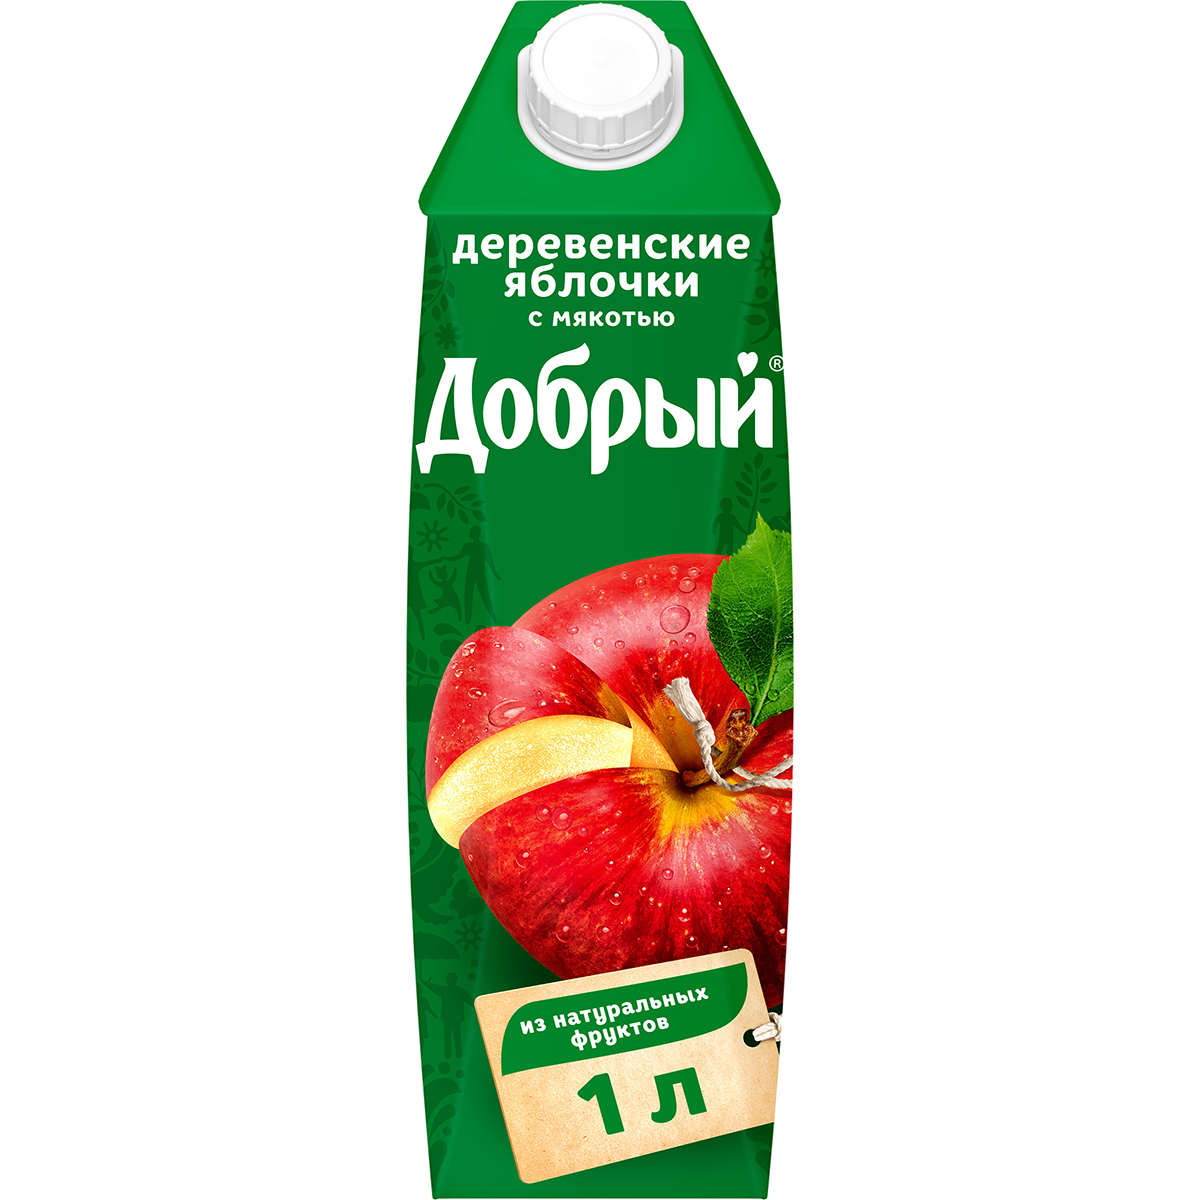 Нектар Добрый Деревенские яблочки с мякотью 1 л нектар добрый персик яблоко с мякотью 1 л